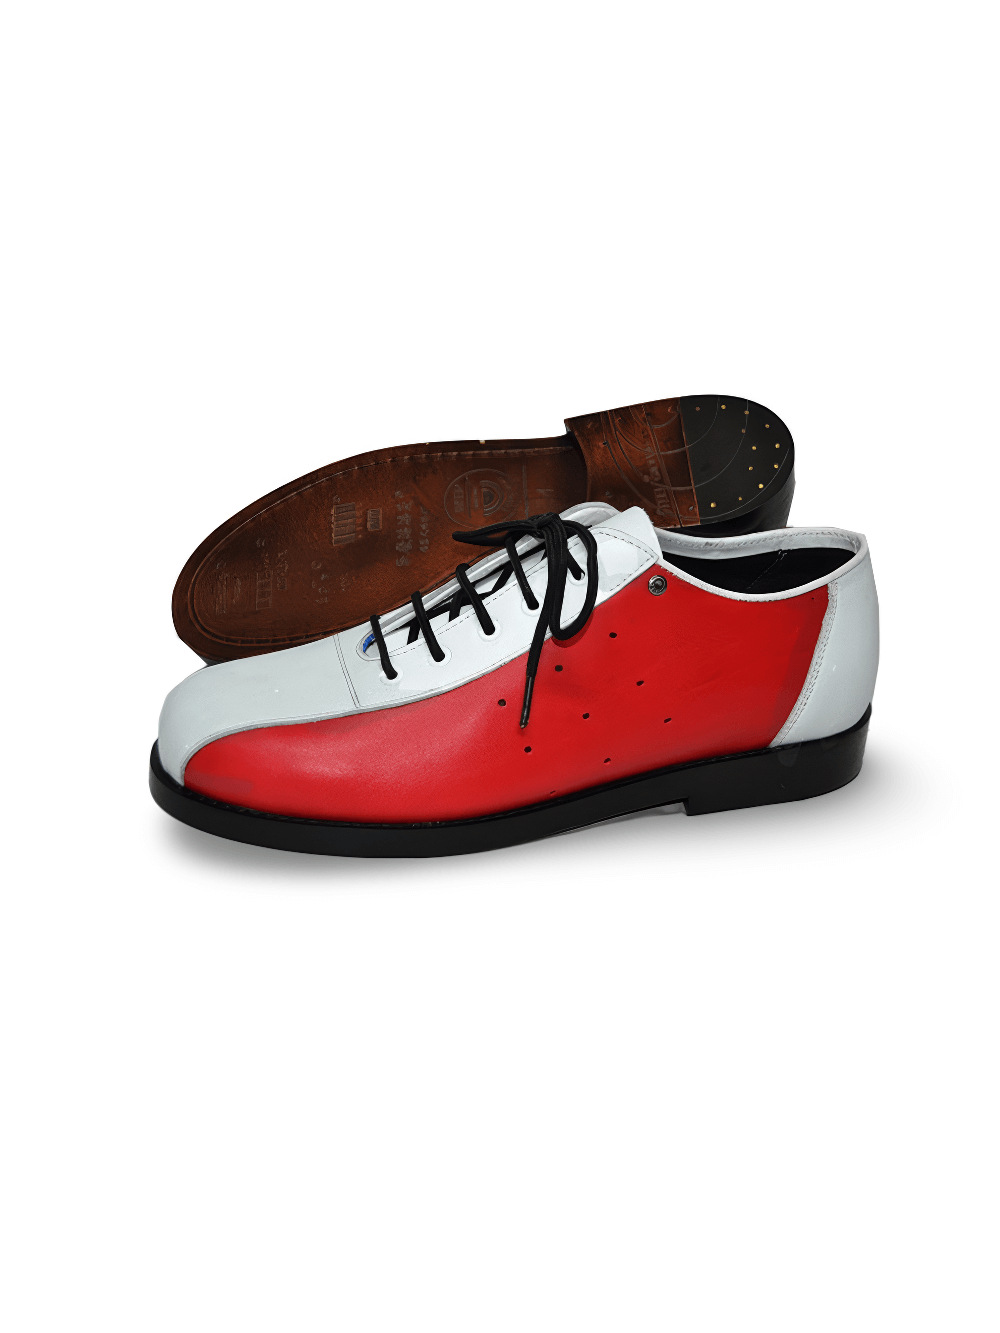 Zapatos Bowling Unisex de Piel Granulada Blanca y Roja